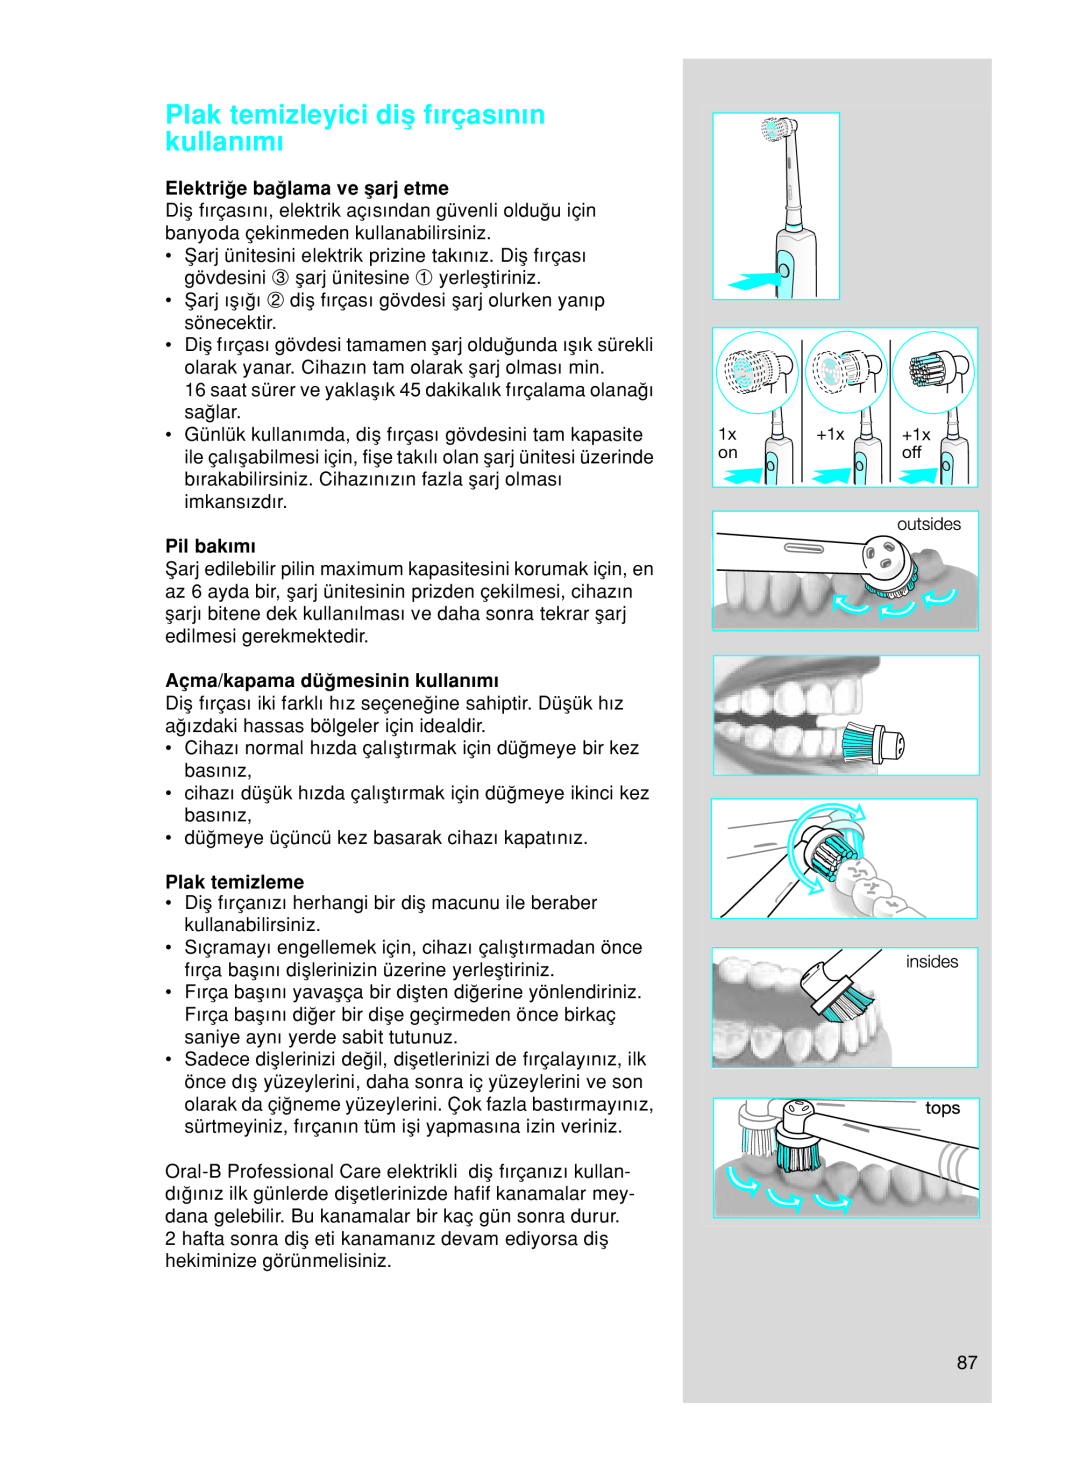 Braun OC17525 manual Plak temizleyici diµ f∂rças∂n∂n kullan∂m∂, Elektriπe baπlama ve µarj etme, Pil bak∂m∂, Plak temizleme 